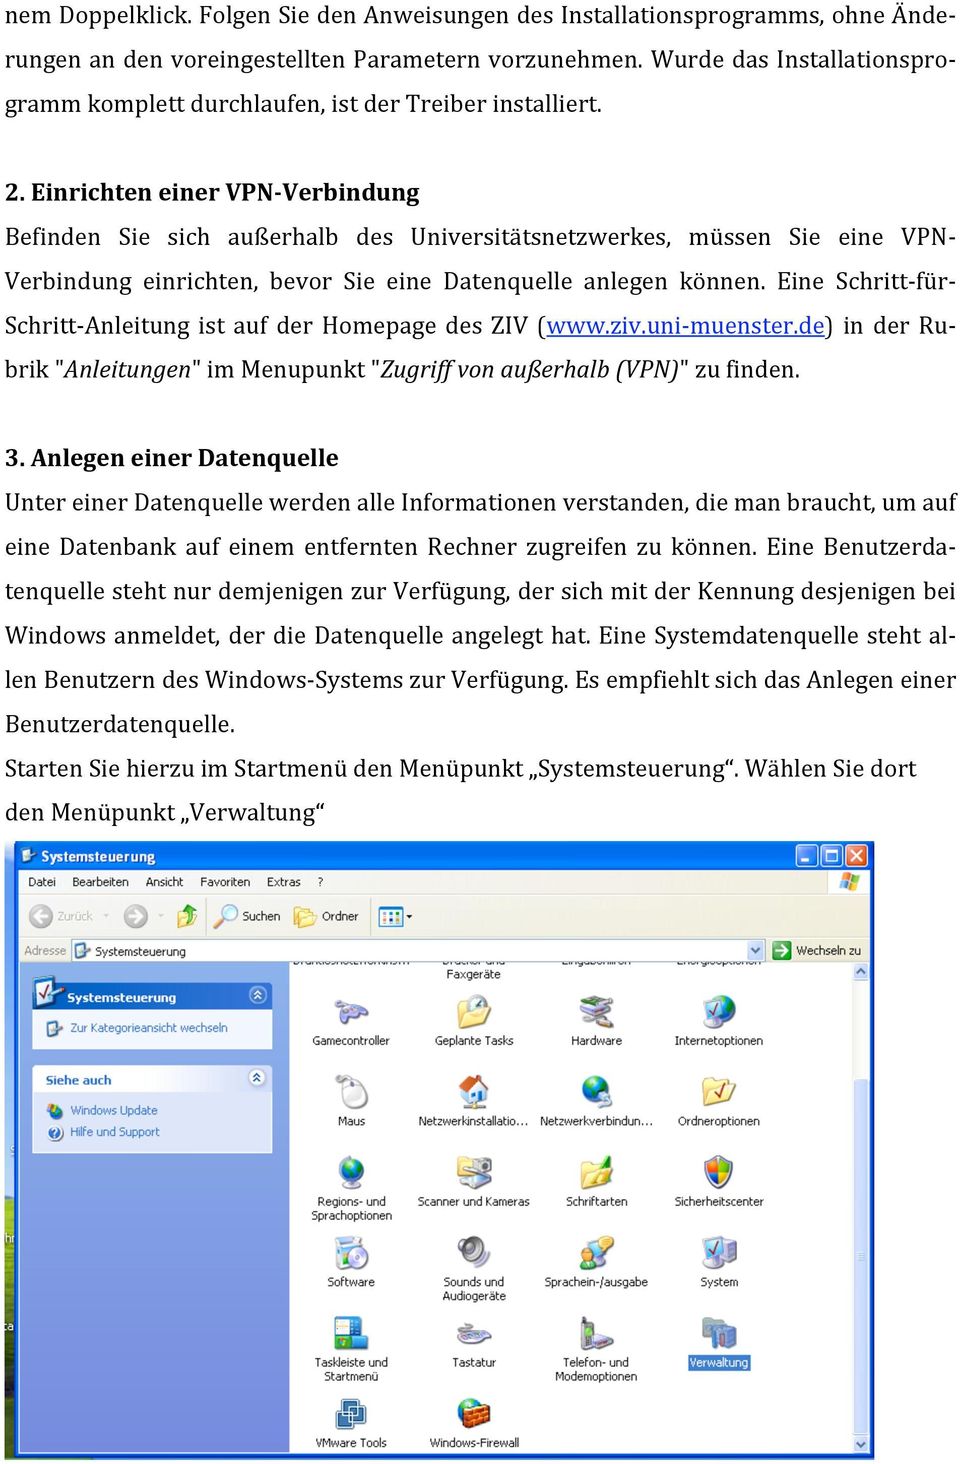 Eine Schritt für Schritt Anleitung ist auf der Homepage des ZIV (www.ziv.uni muenster.de) in der Rubrik"Anleitungen"imMenupunkt"Zugriffvonaußerhalb(VPN)"zufinden. 3.